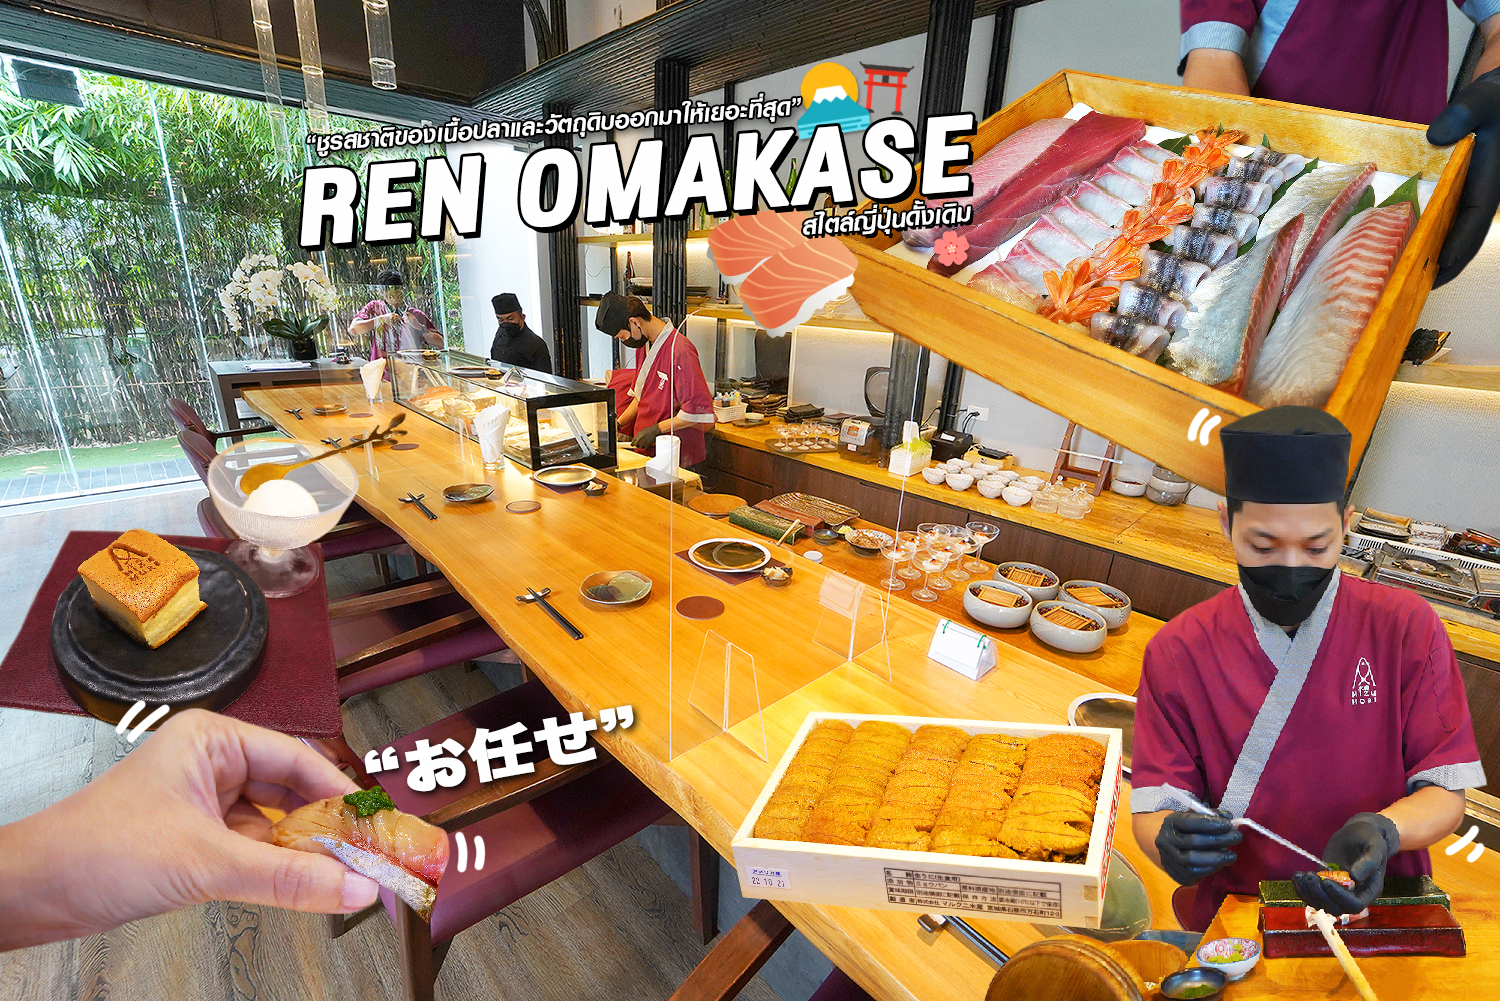 กินโอมากาเสะฉบับ Edo-Omakase แบบญี่ปุ่นดั้งเดิม ชูรสชาติเนื้อปลาและวัตถุดิบออกมาได้เยอะสุด เป็นไง Ren Omakase @กัลปพฤกษ์ ไปกินกัน…